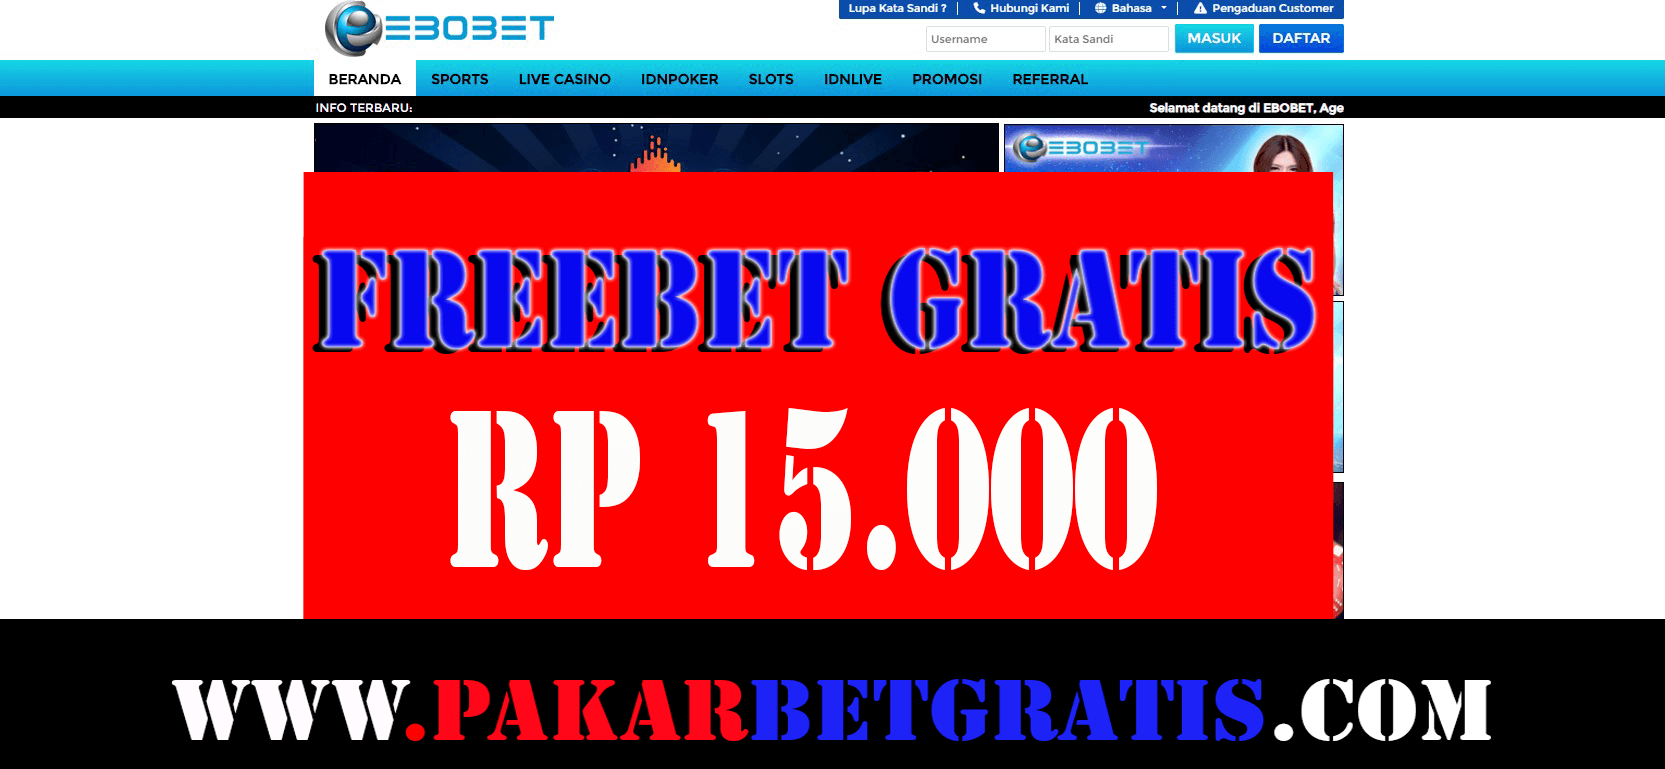 Freebet Gratis ebobet Rp 15.000 Tanpa deposit